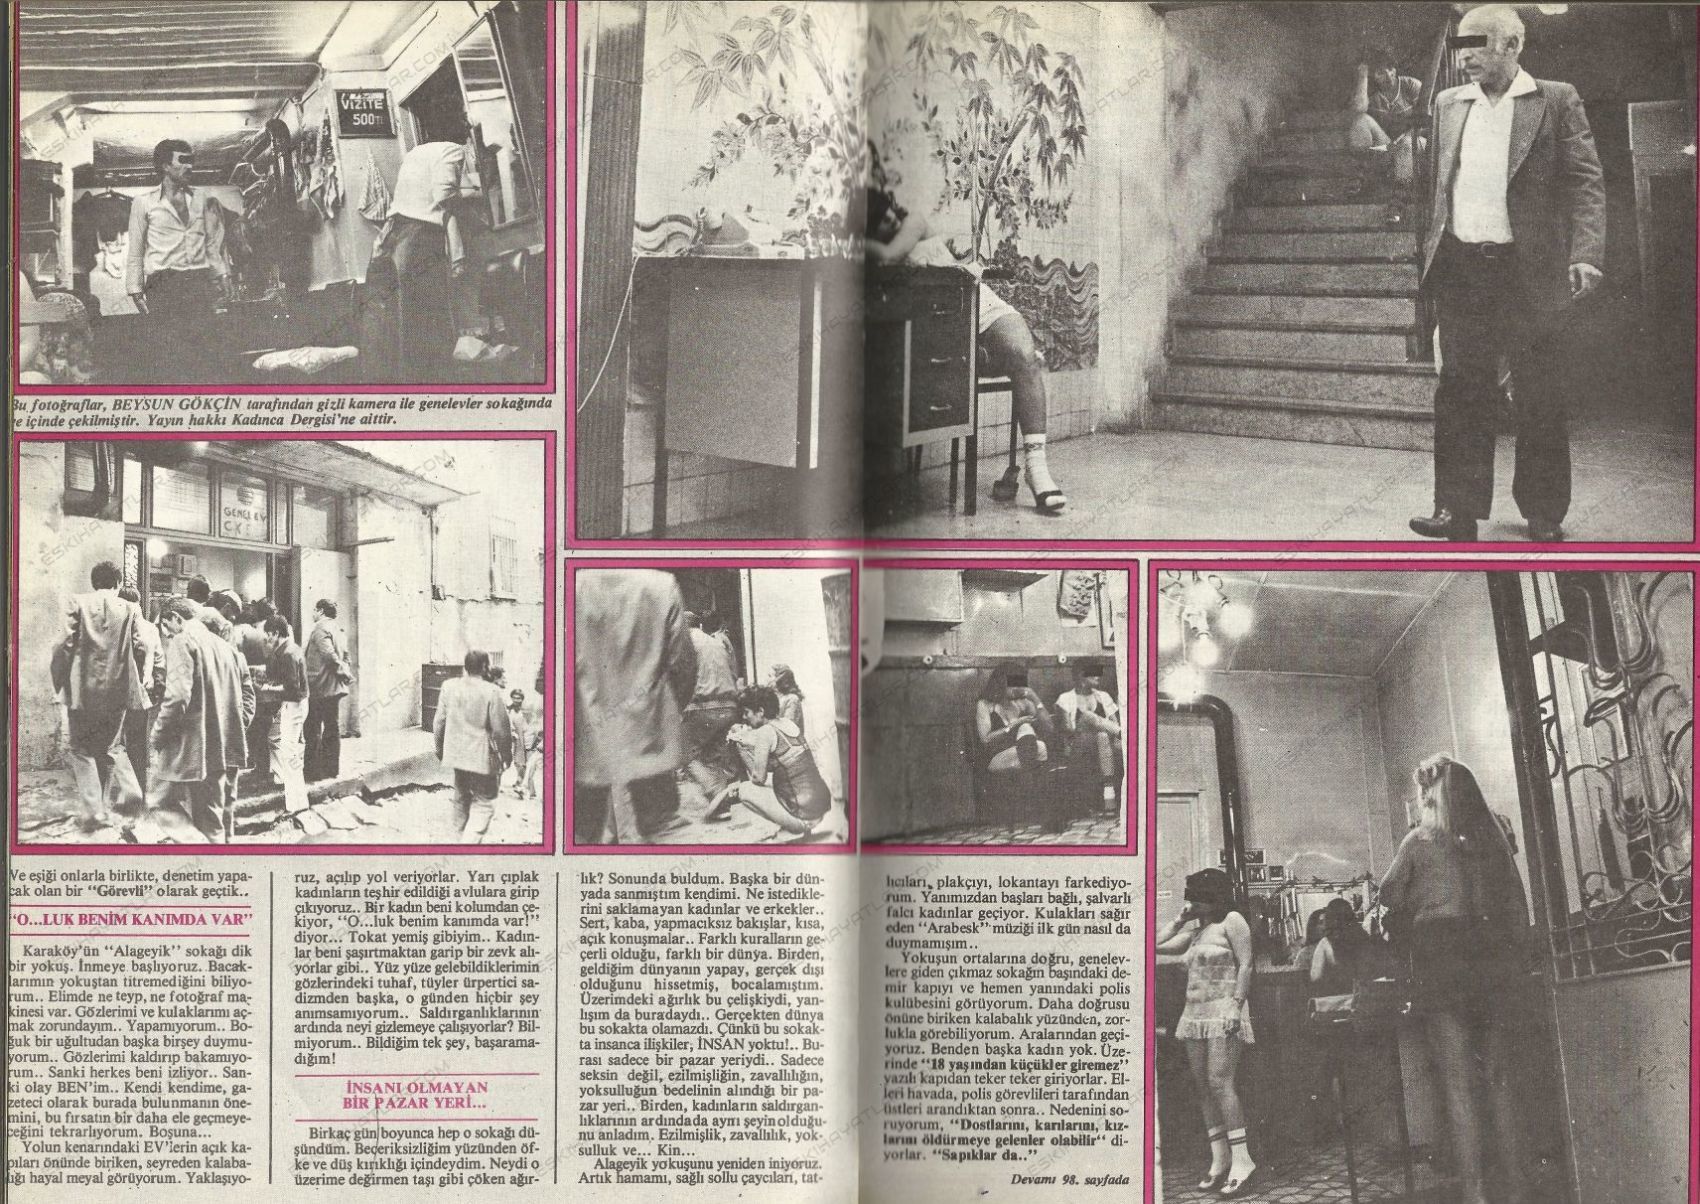 0136-genelev-fotograflari-1983-yilinda-genelevler-kadinca-dergisi (1)